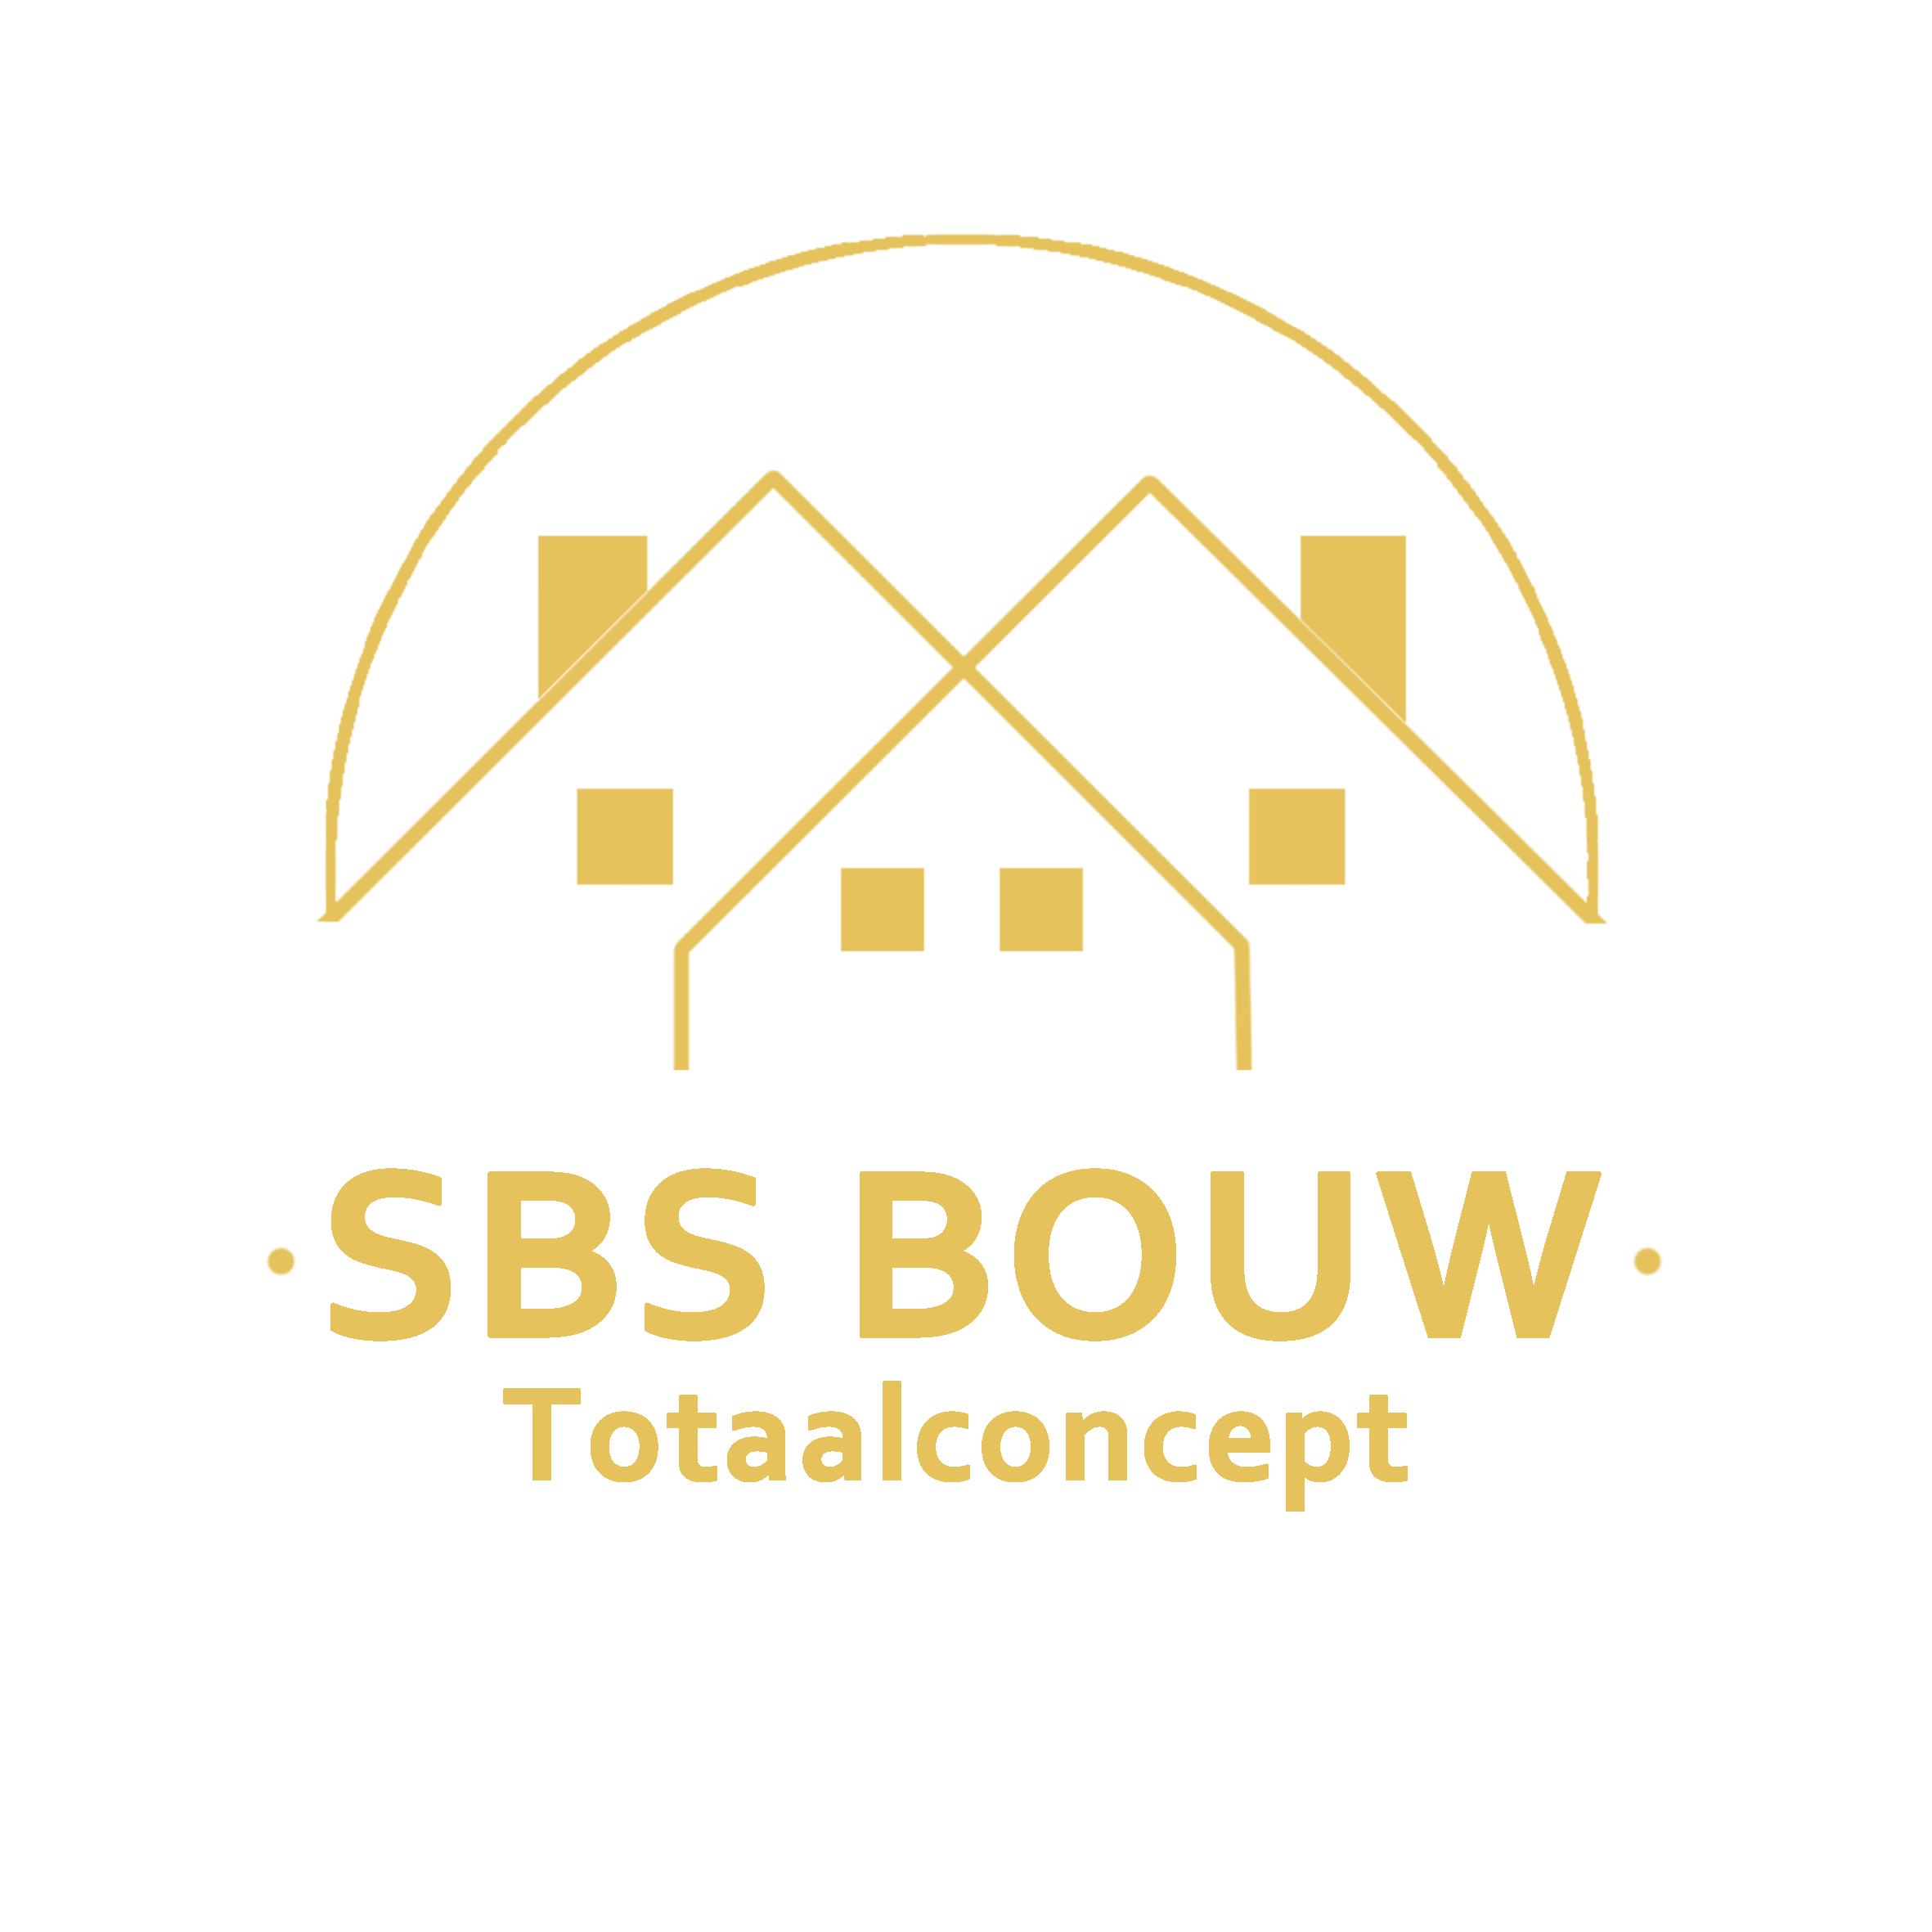 SBS BOUW